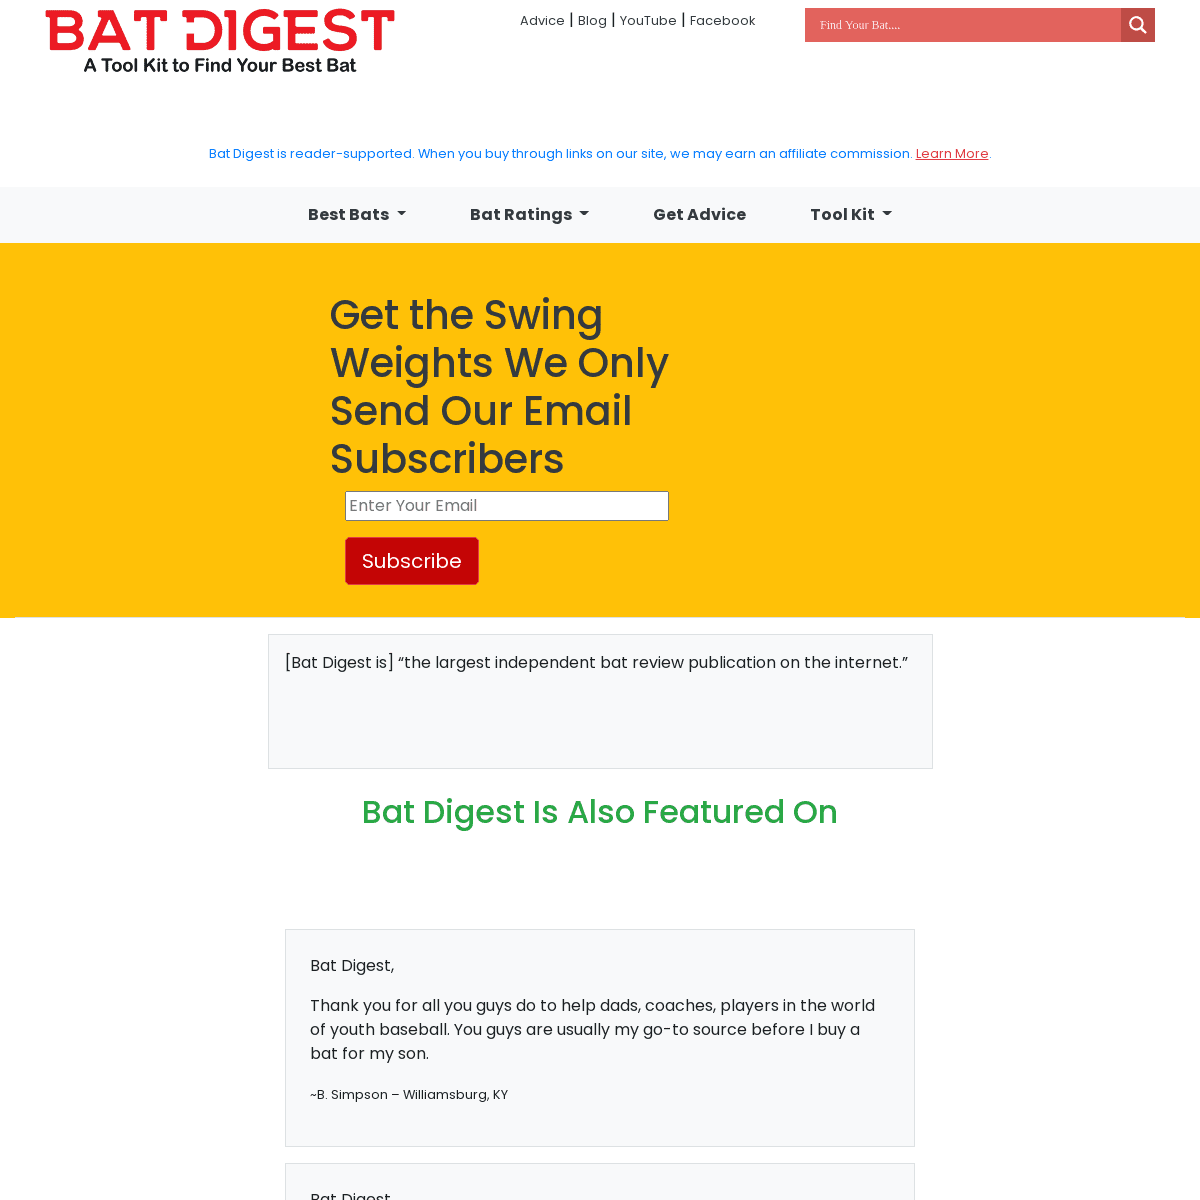 A complete backup of https://batdigest.com